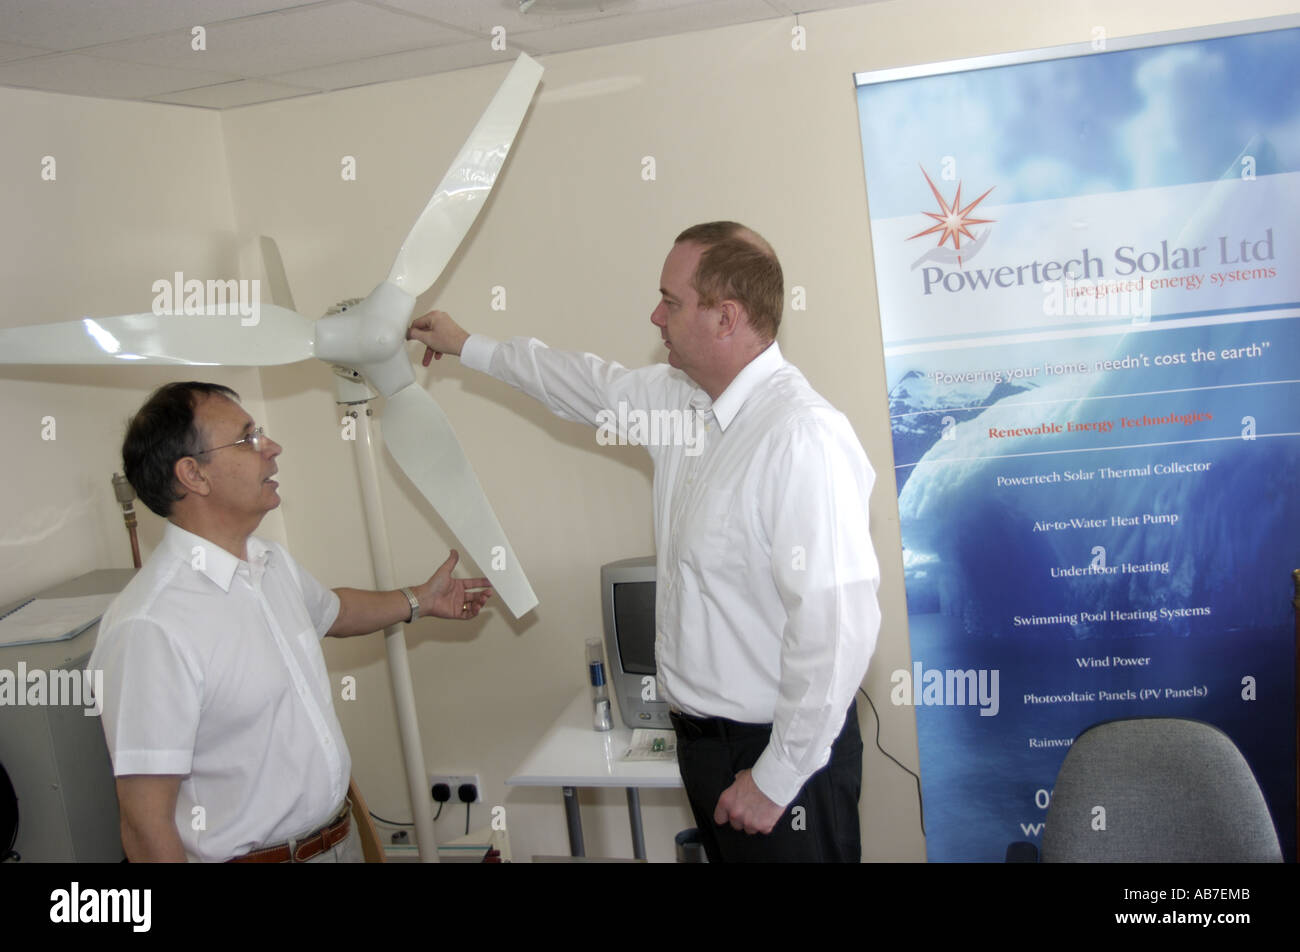 Essendo Techinicians instucted nell'installazione e uso di micro turbine eoliche e altri micro power systems Powertech a energia solare Foto Stock